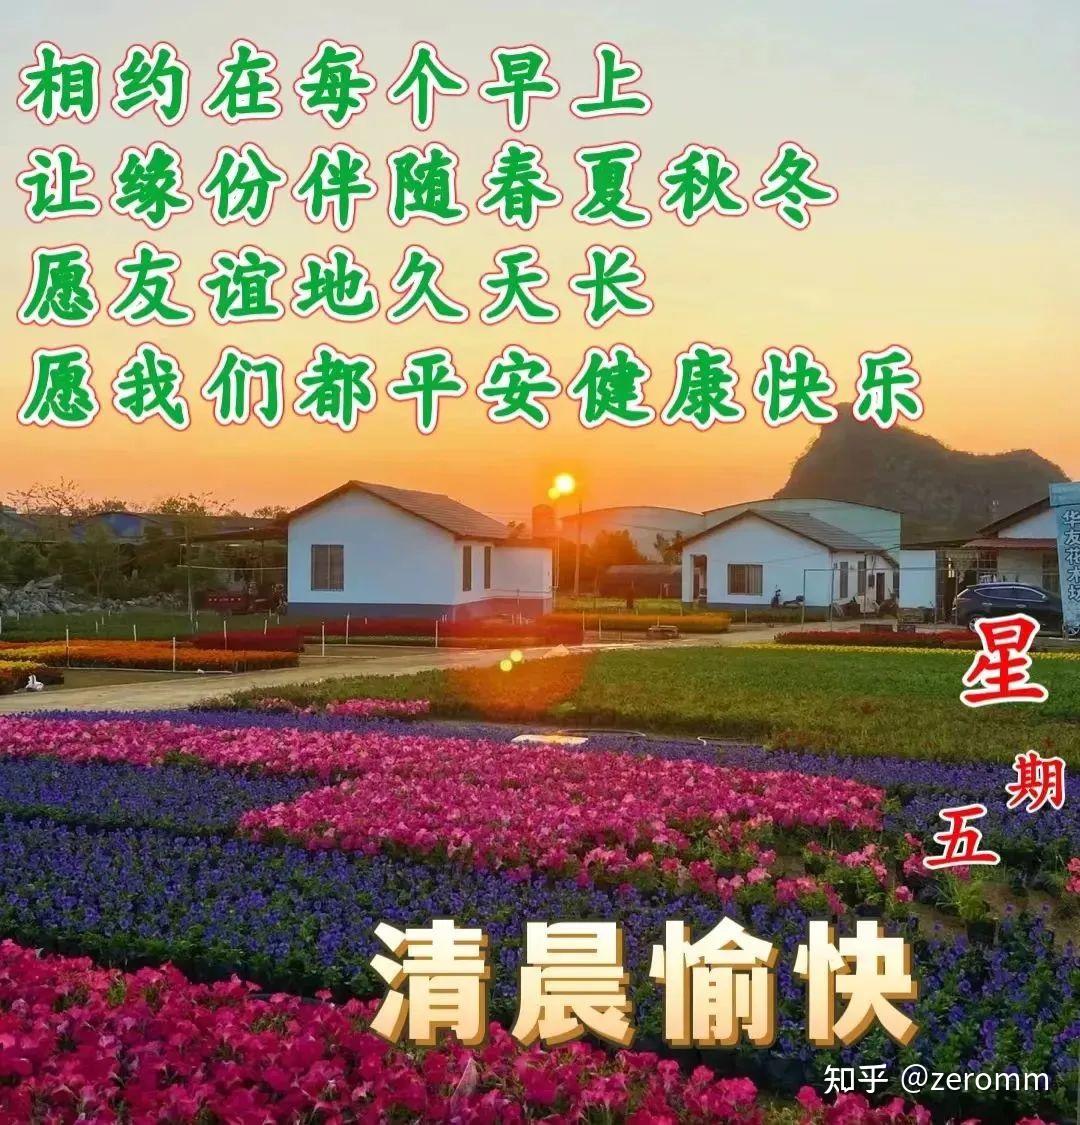 3月3日周五早上好，新版精选祝福语问候语录唯美图片带字带问候语 - 哔哩哔哩